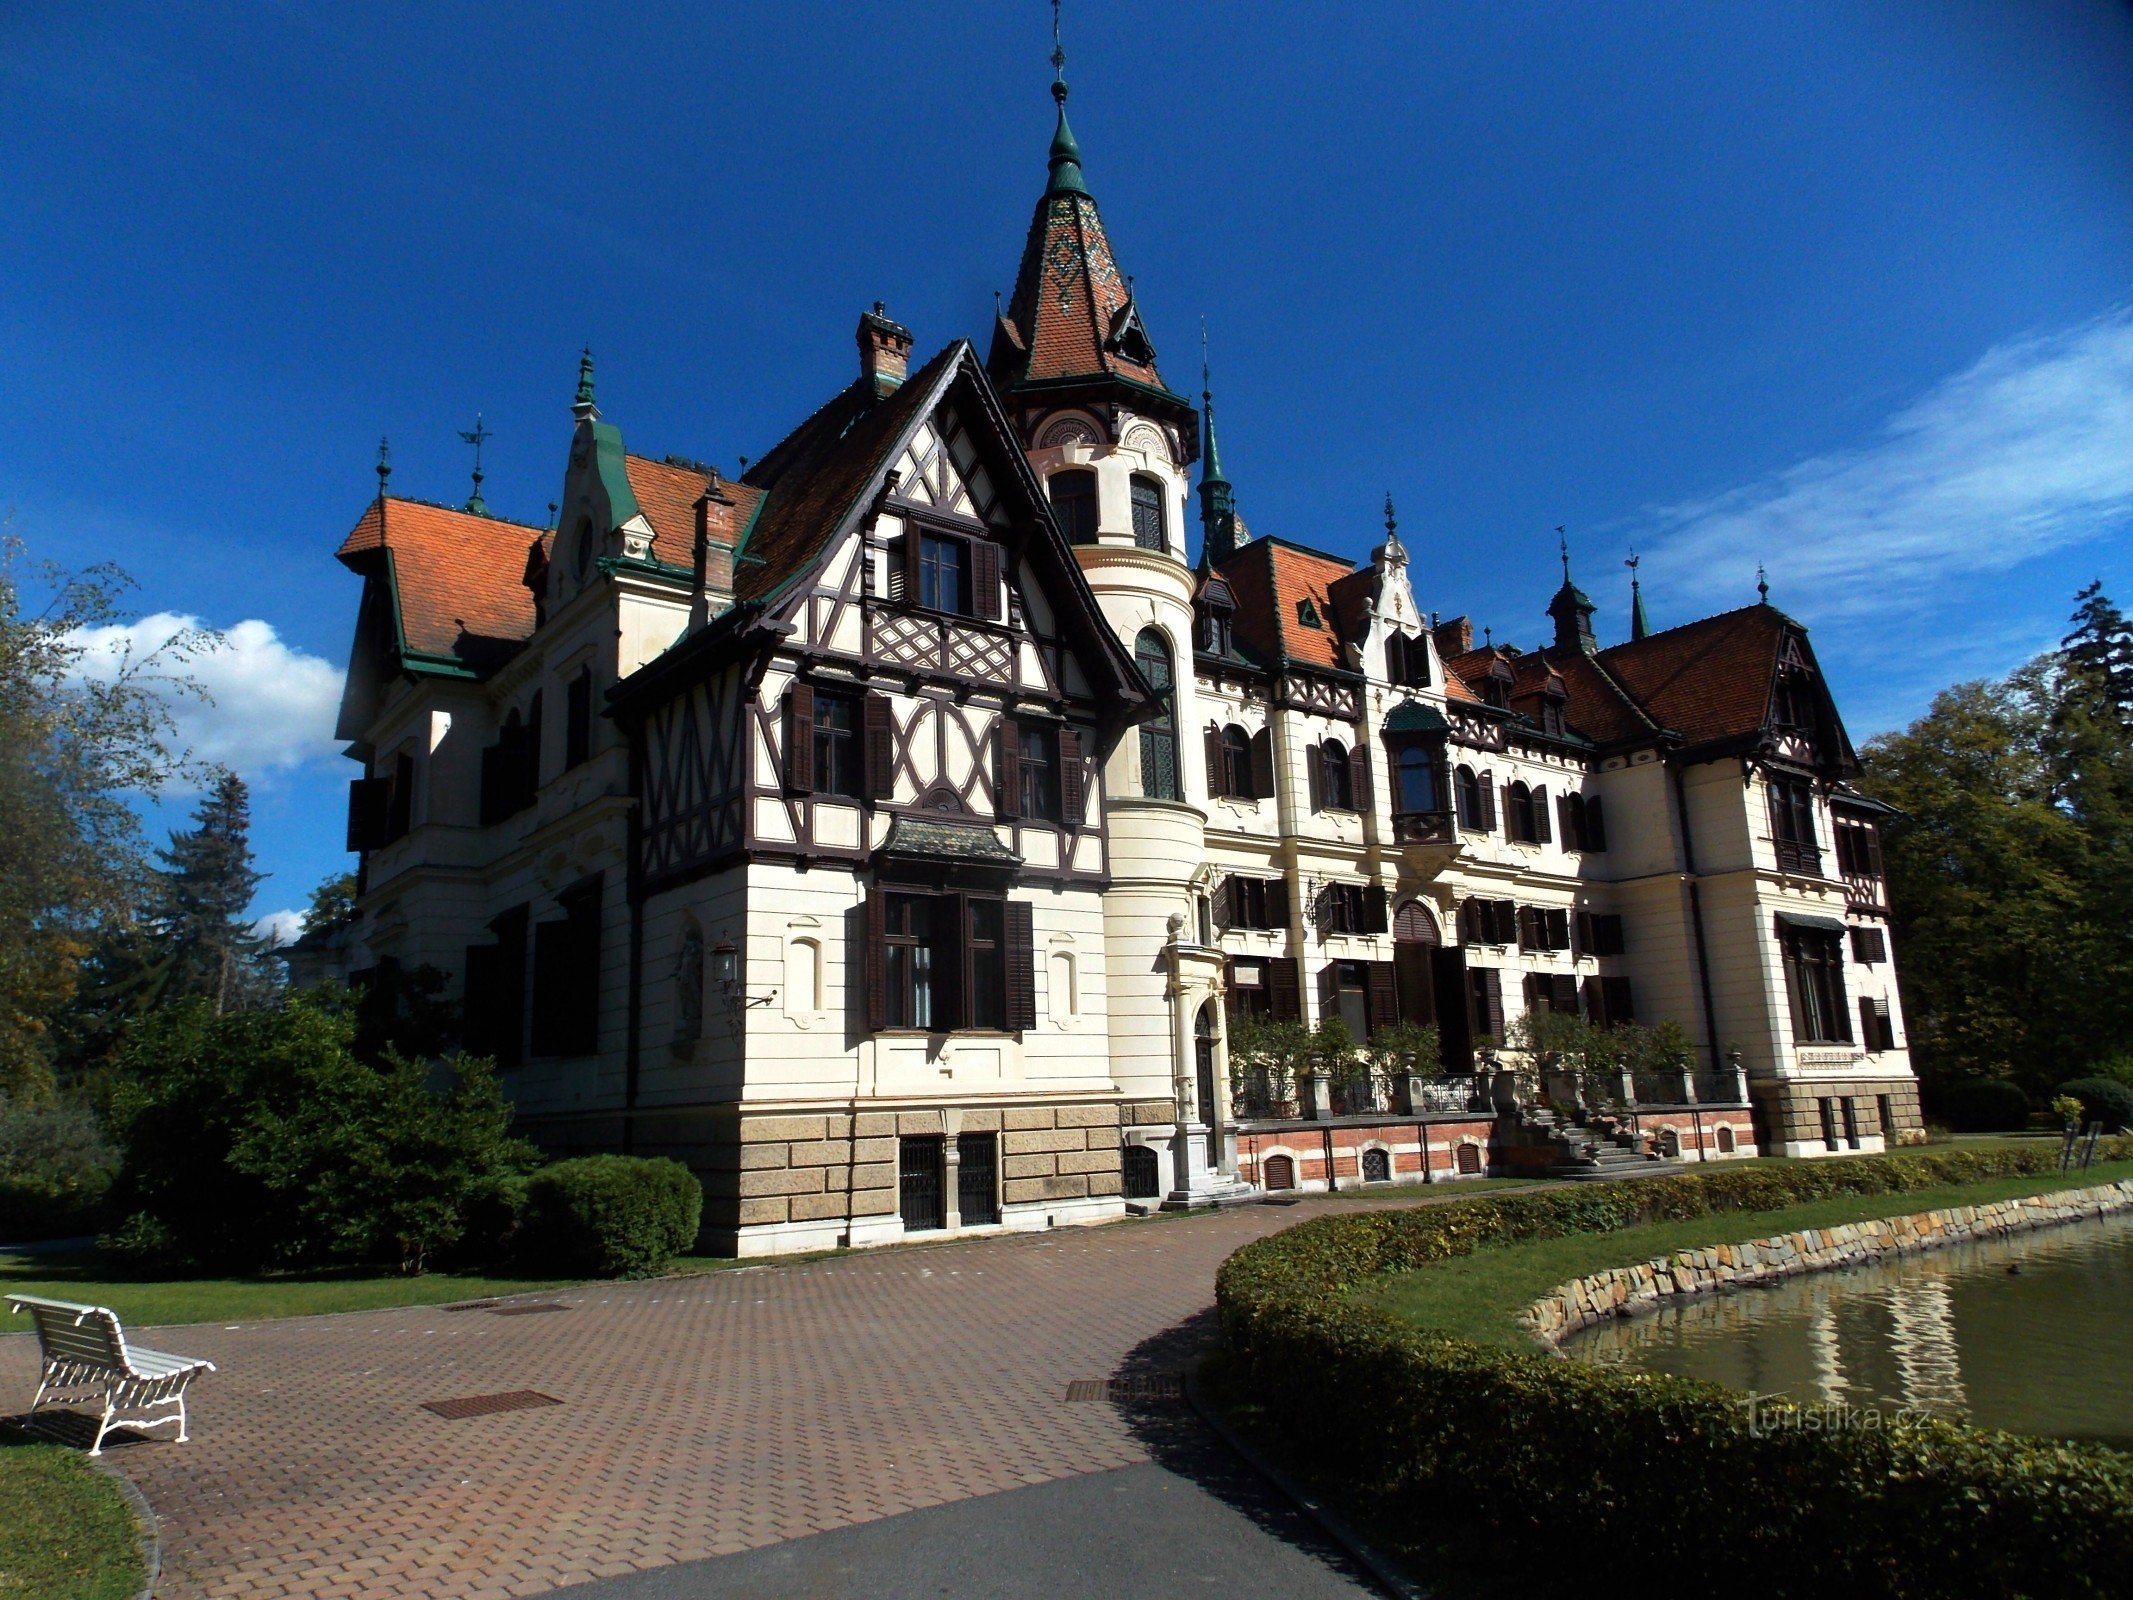 Đến lâu đài cổ tích Lešná gần Zlína